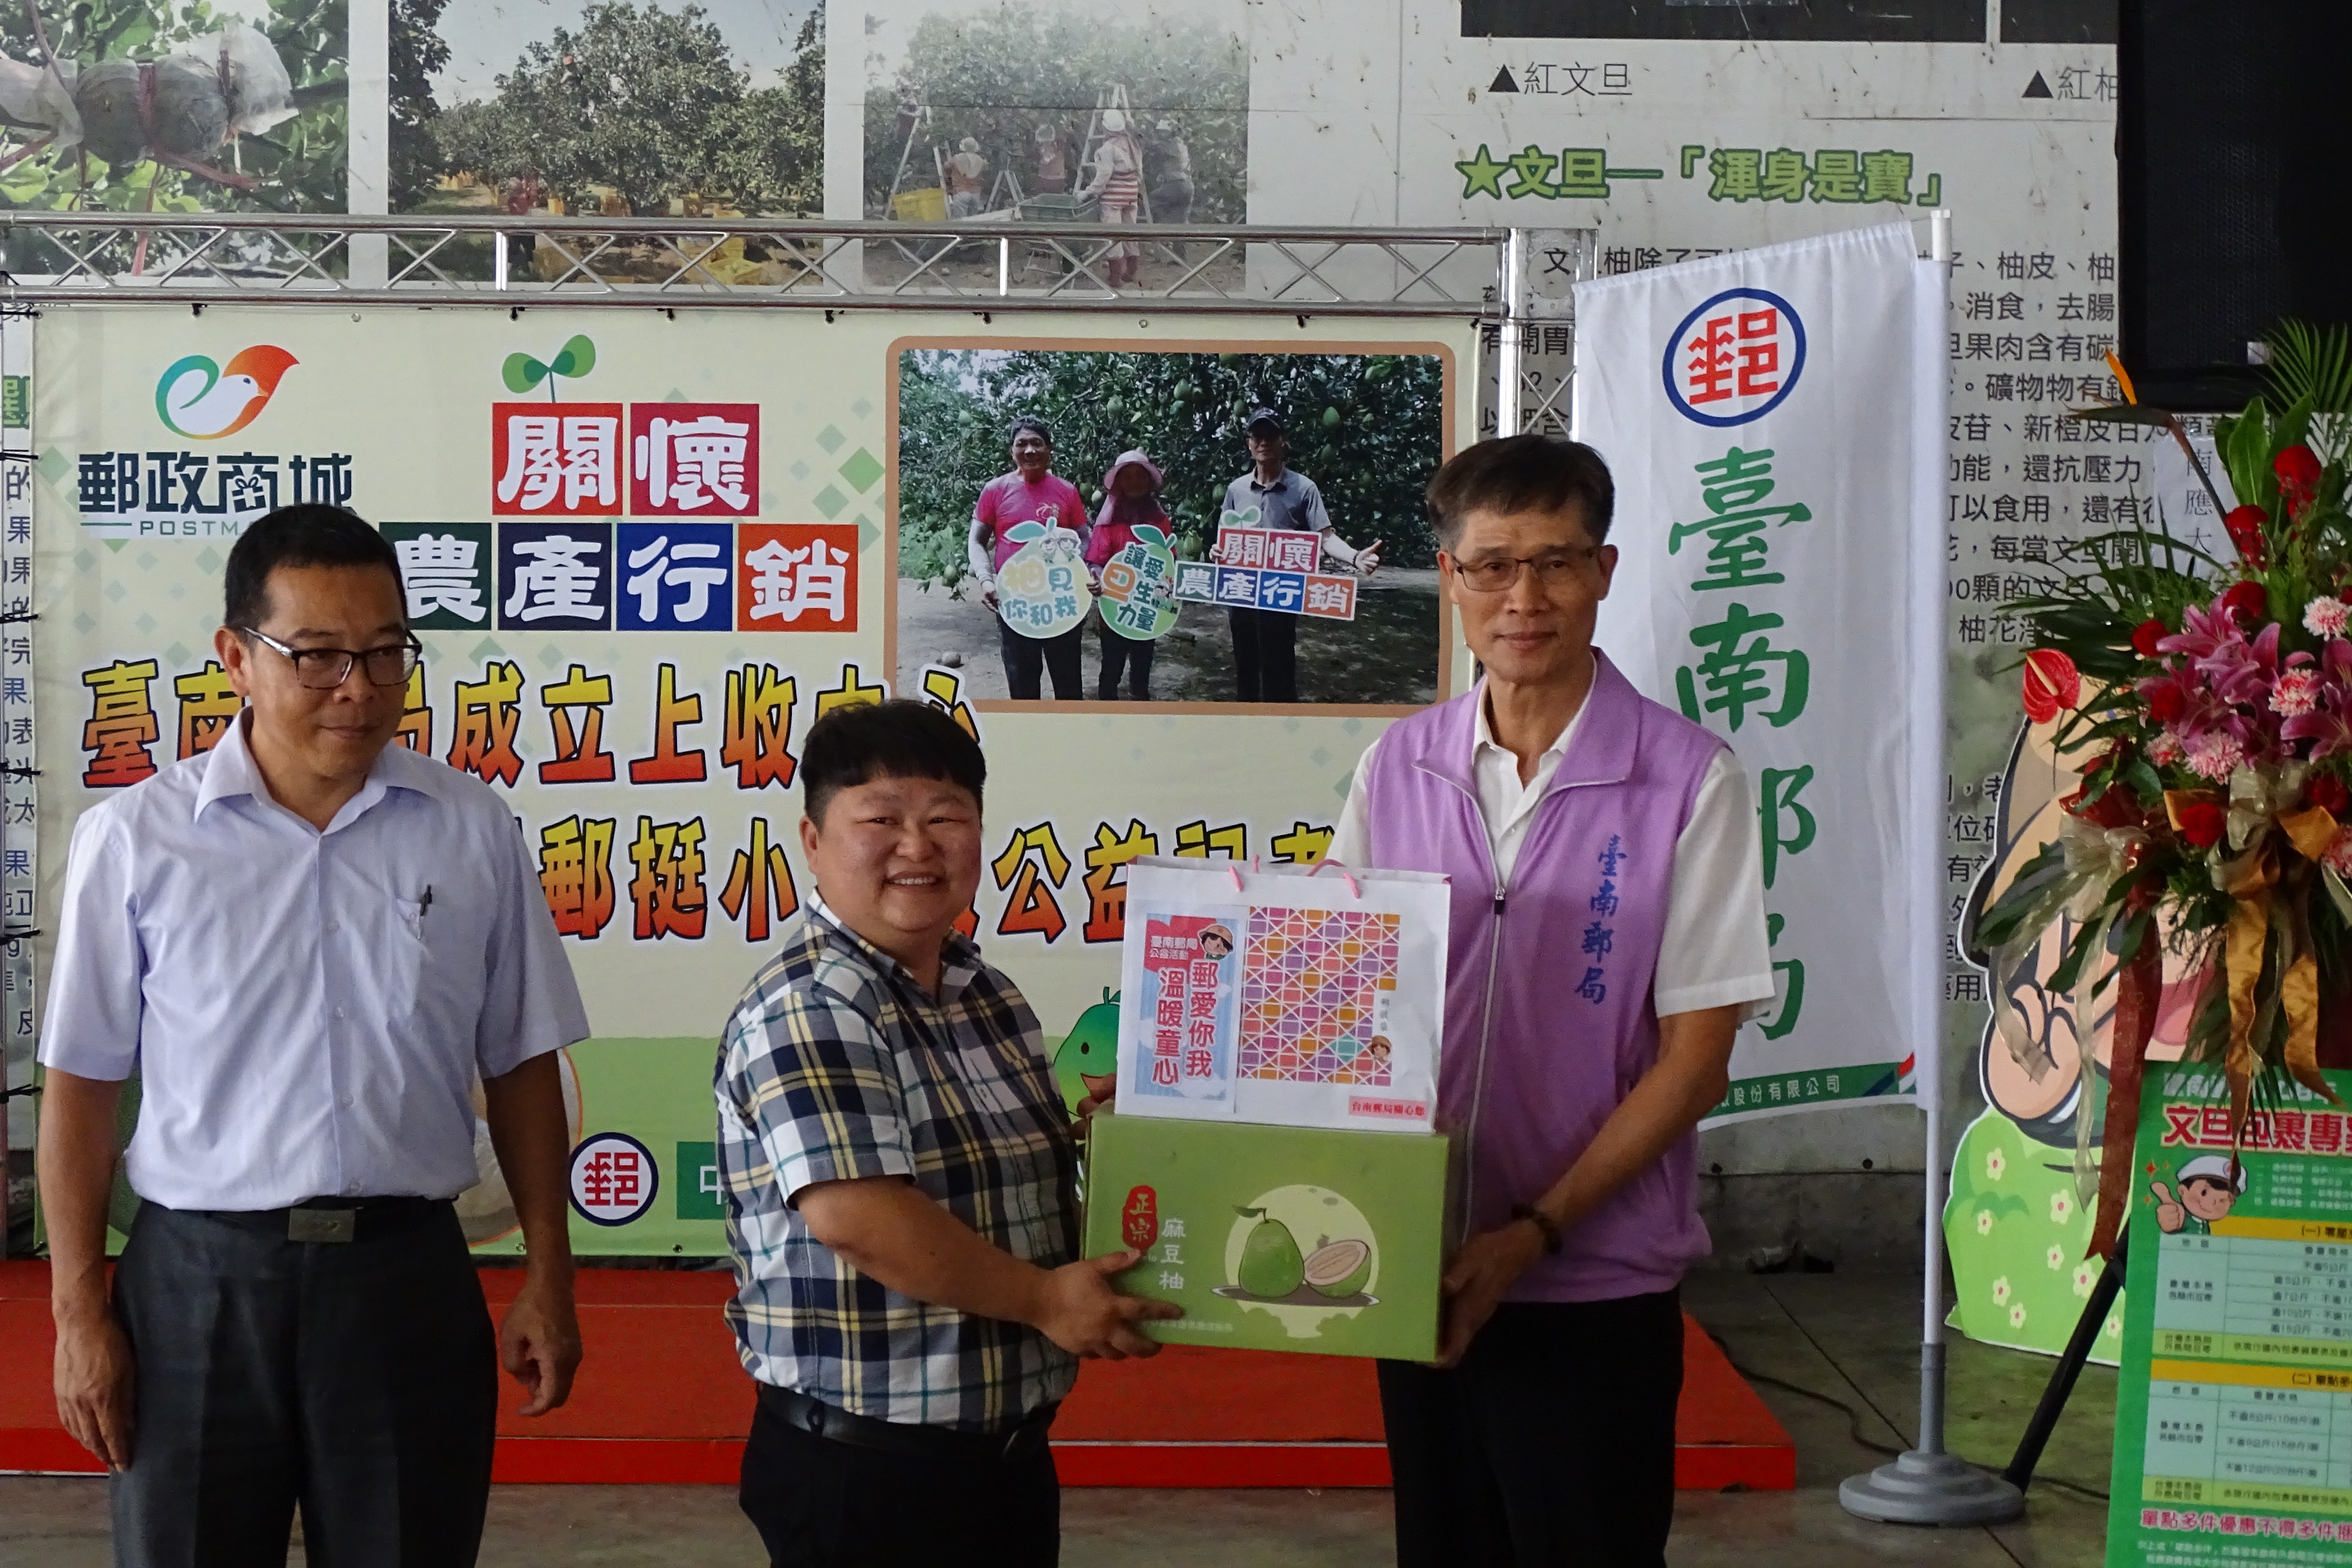 臺南郵局成立上收中心&關懷農產郵挺小農做公益記者會